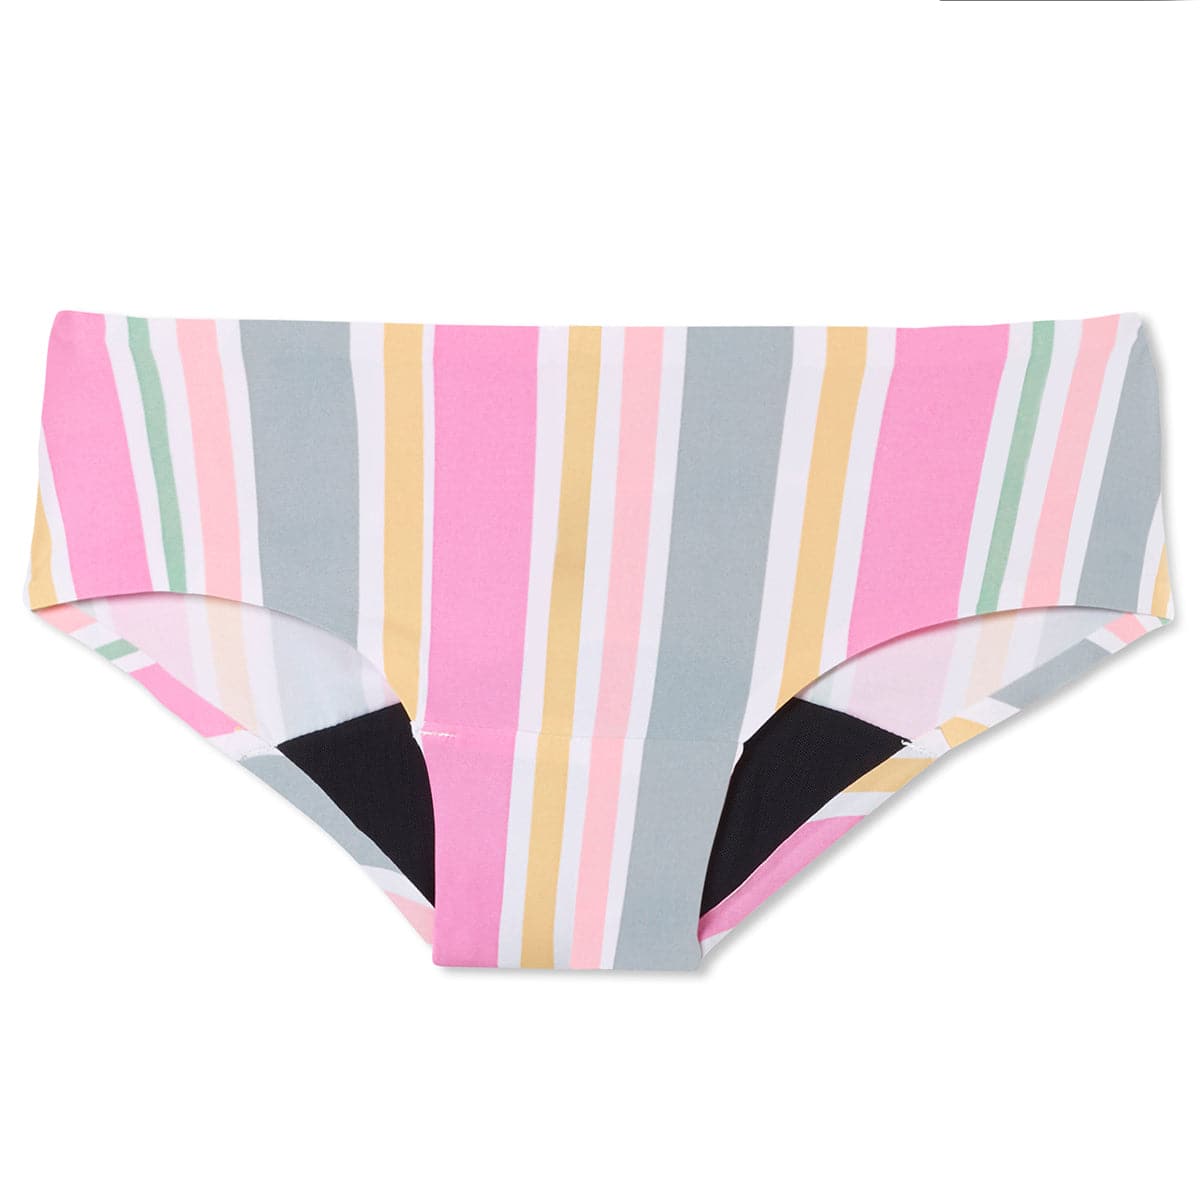 Cotton Period Underwear for Teens - Pink Hearts – MyNickerBot